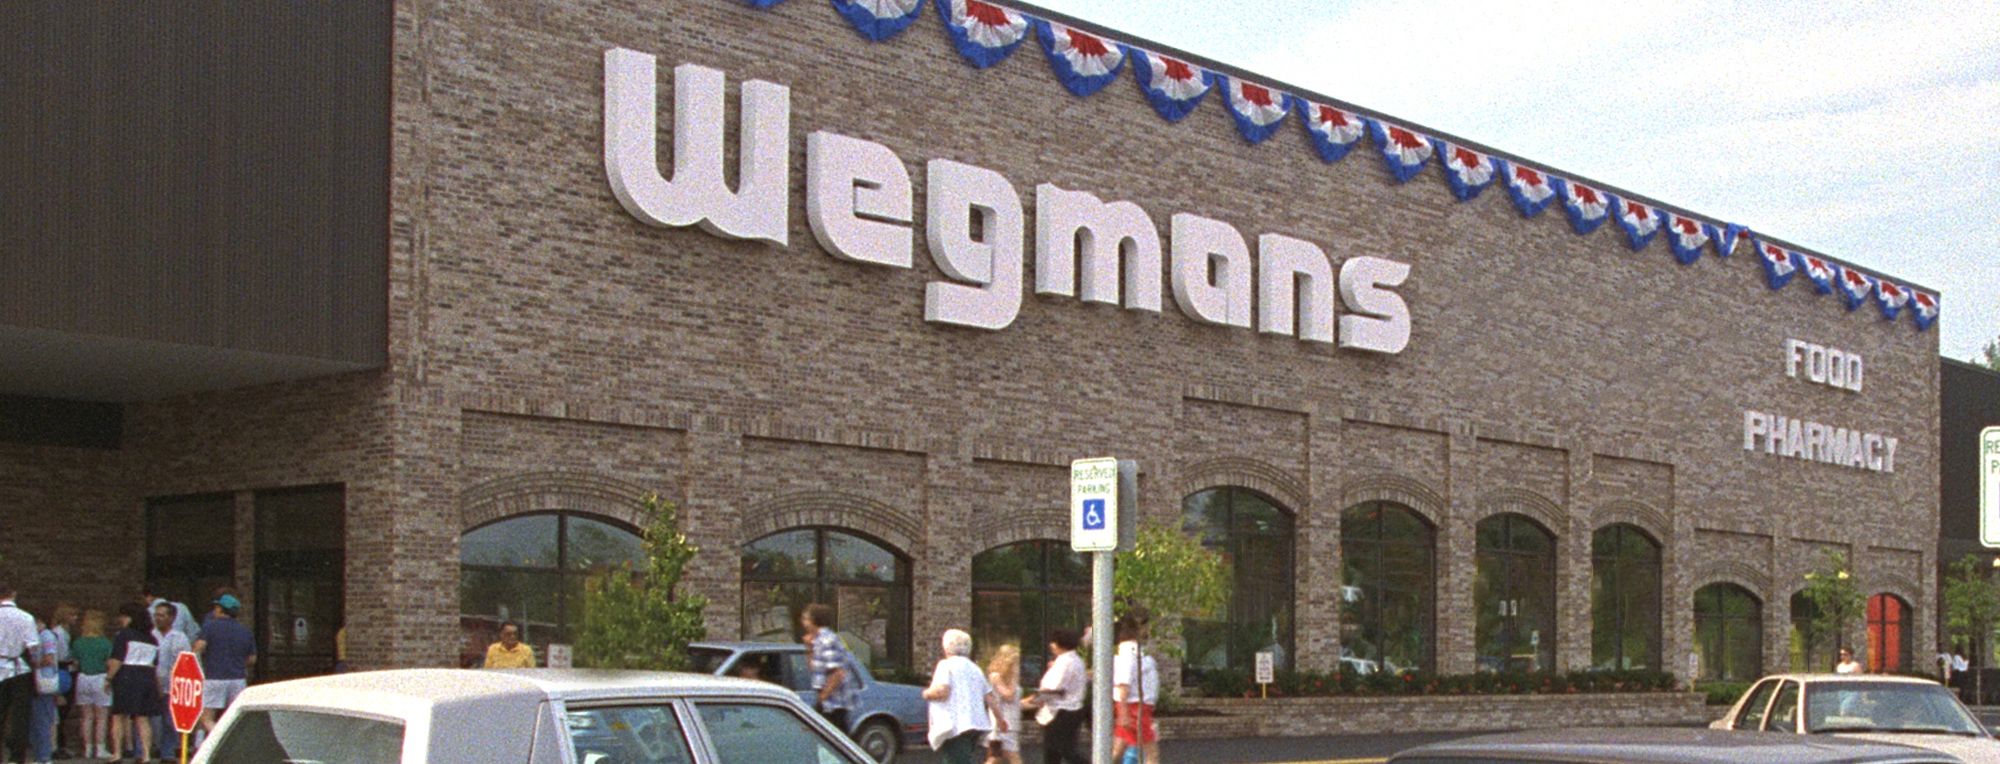 https://images.wegmans.com/is/image/wegmans/Wegmans_Store_Front_75_Erie_PA?wid=2000&hei=764